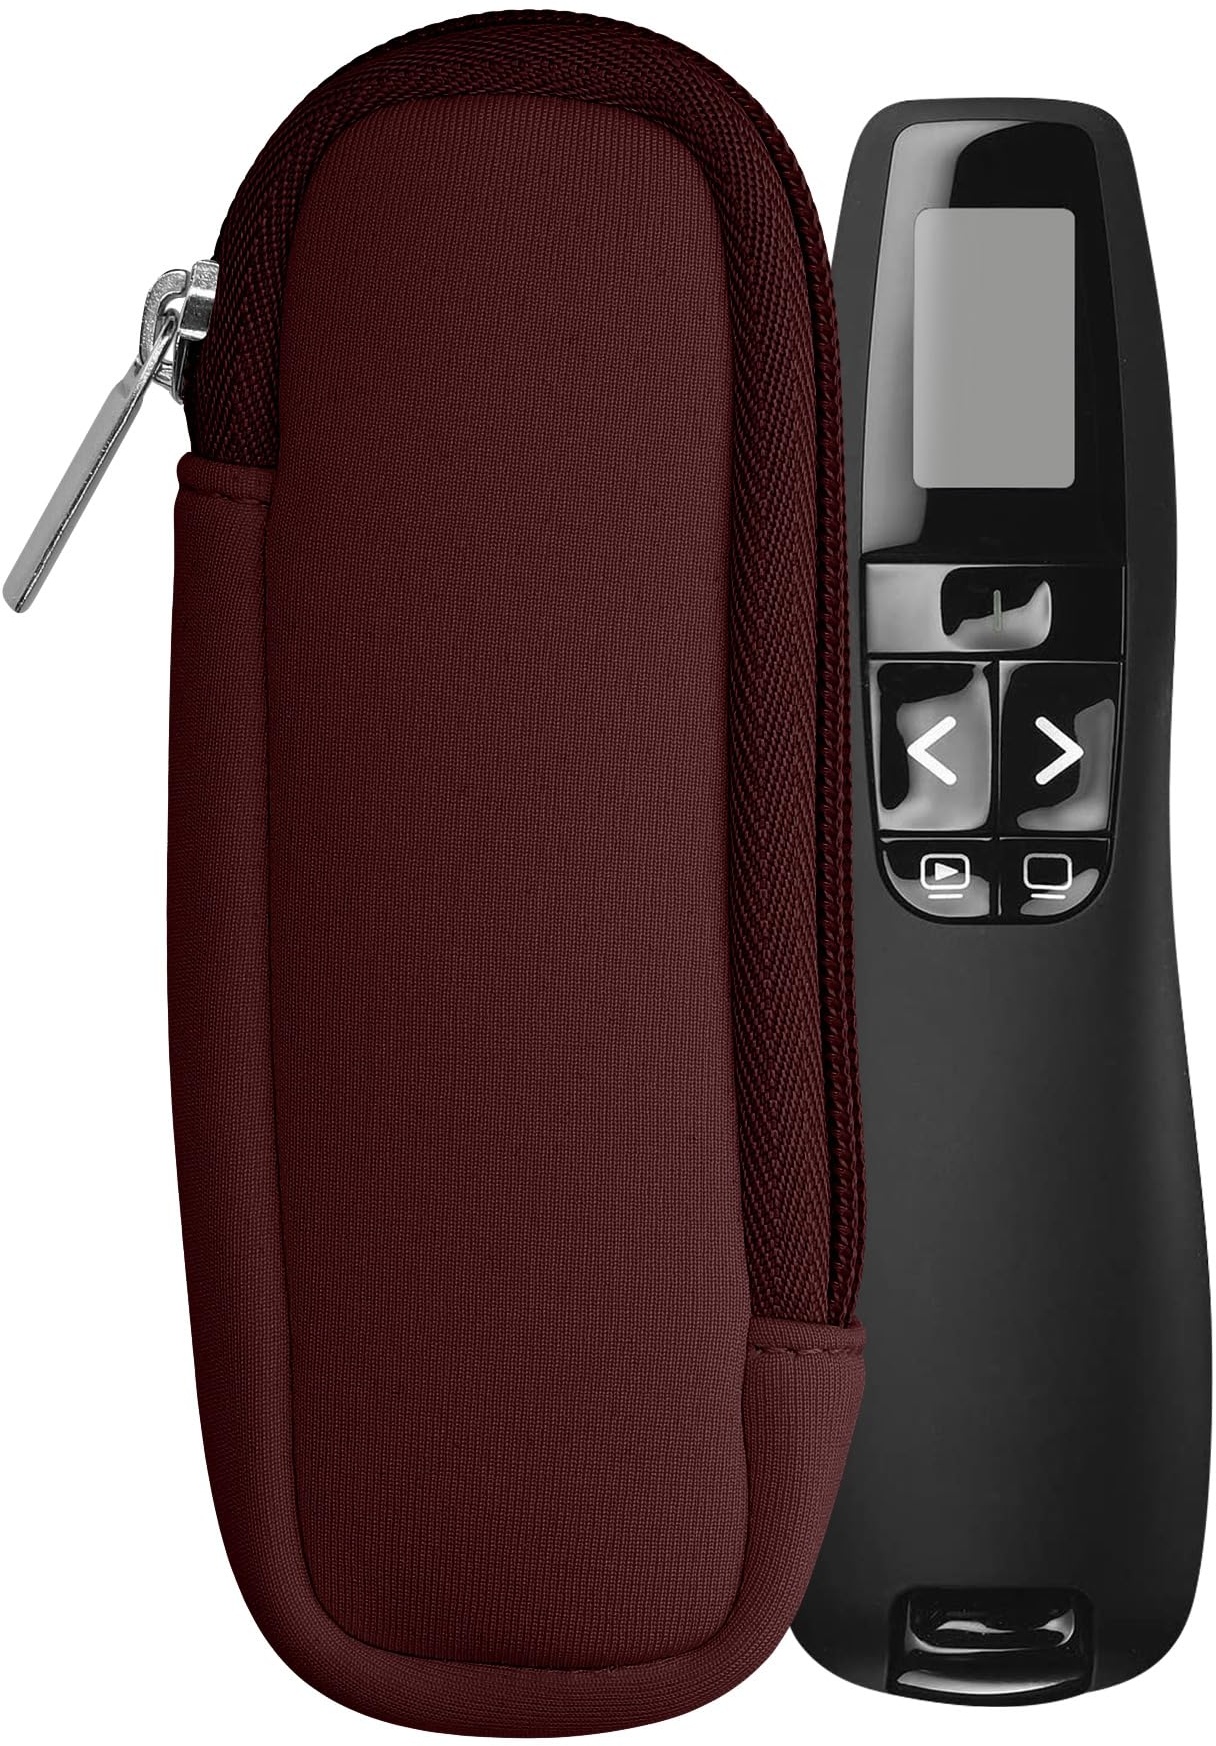 kwmobile Tasche für Universal Laser Pointer - Neopren Hülle Laserpointer in Brombeere - Laserpointer Case mit Reißverschluss - 14,5 x 5 cm Innenmaße